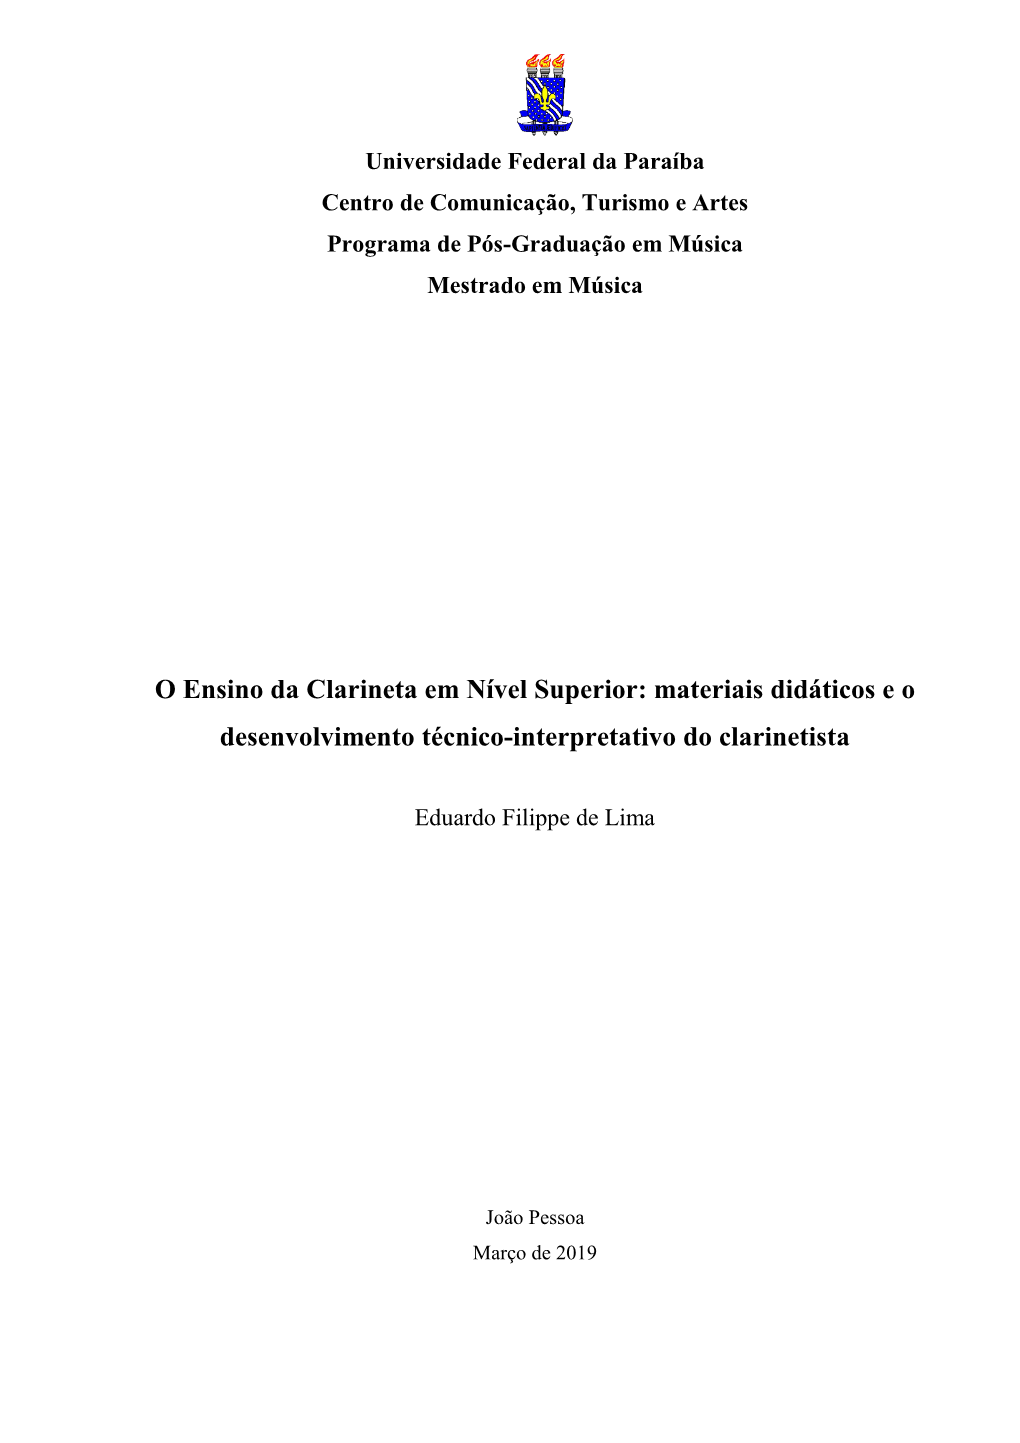 O Ensino Da Clarineta Em Nível Superior: Materiais Didáticos E O Desenvolvimento Técnico-Interpretativo Do Clarinetista